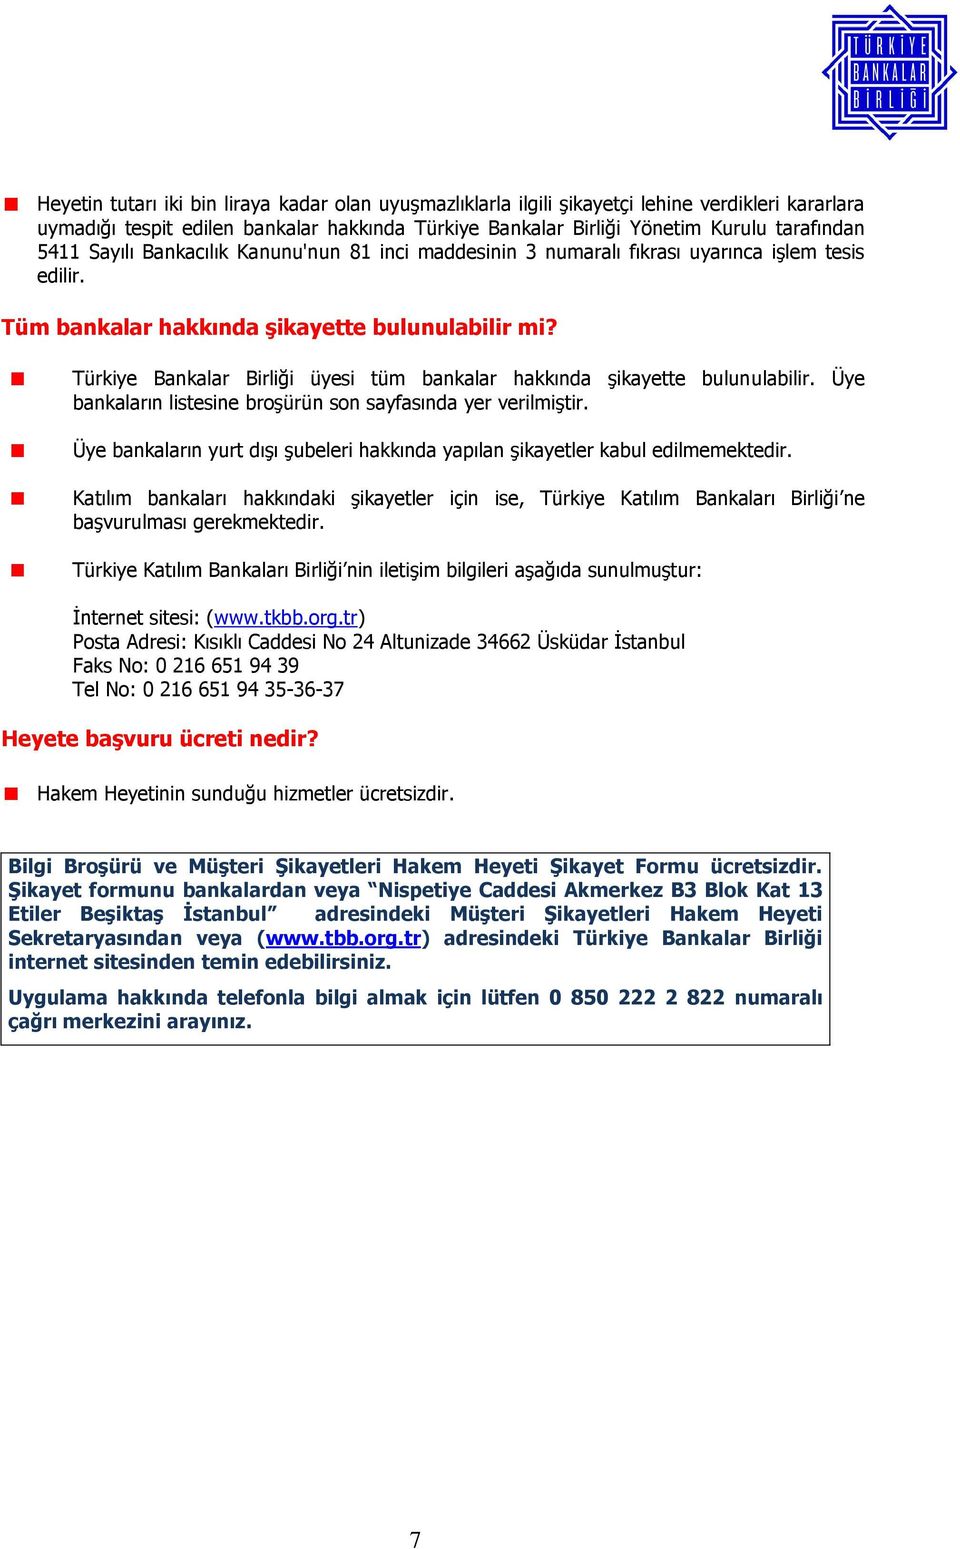 Türkiye Bankalar Birliği üyesi tüm bankalar hakkında şikayette bulunulabilir. Üye bankaların listesine broşürün son sayfasında yer verilmiştir.